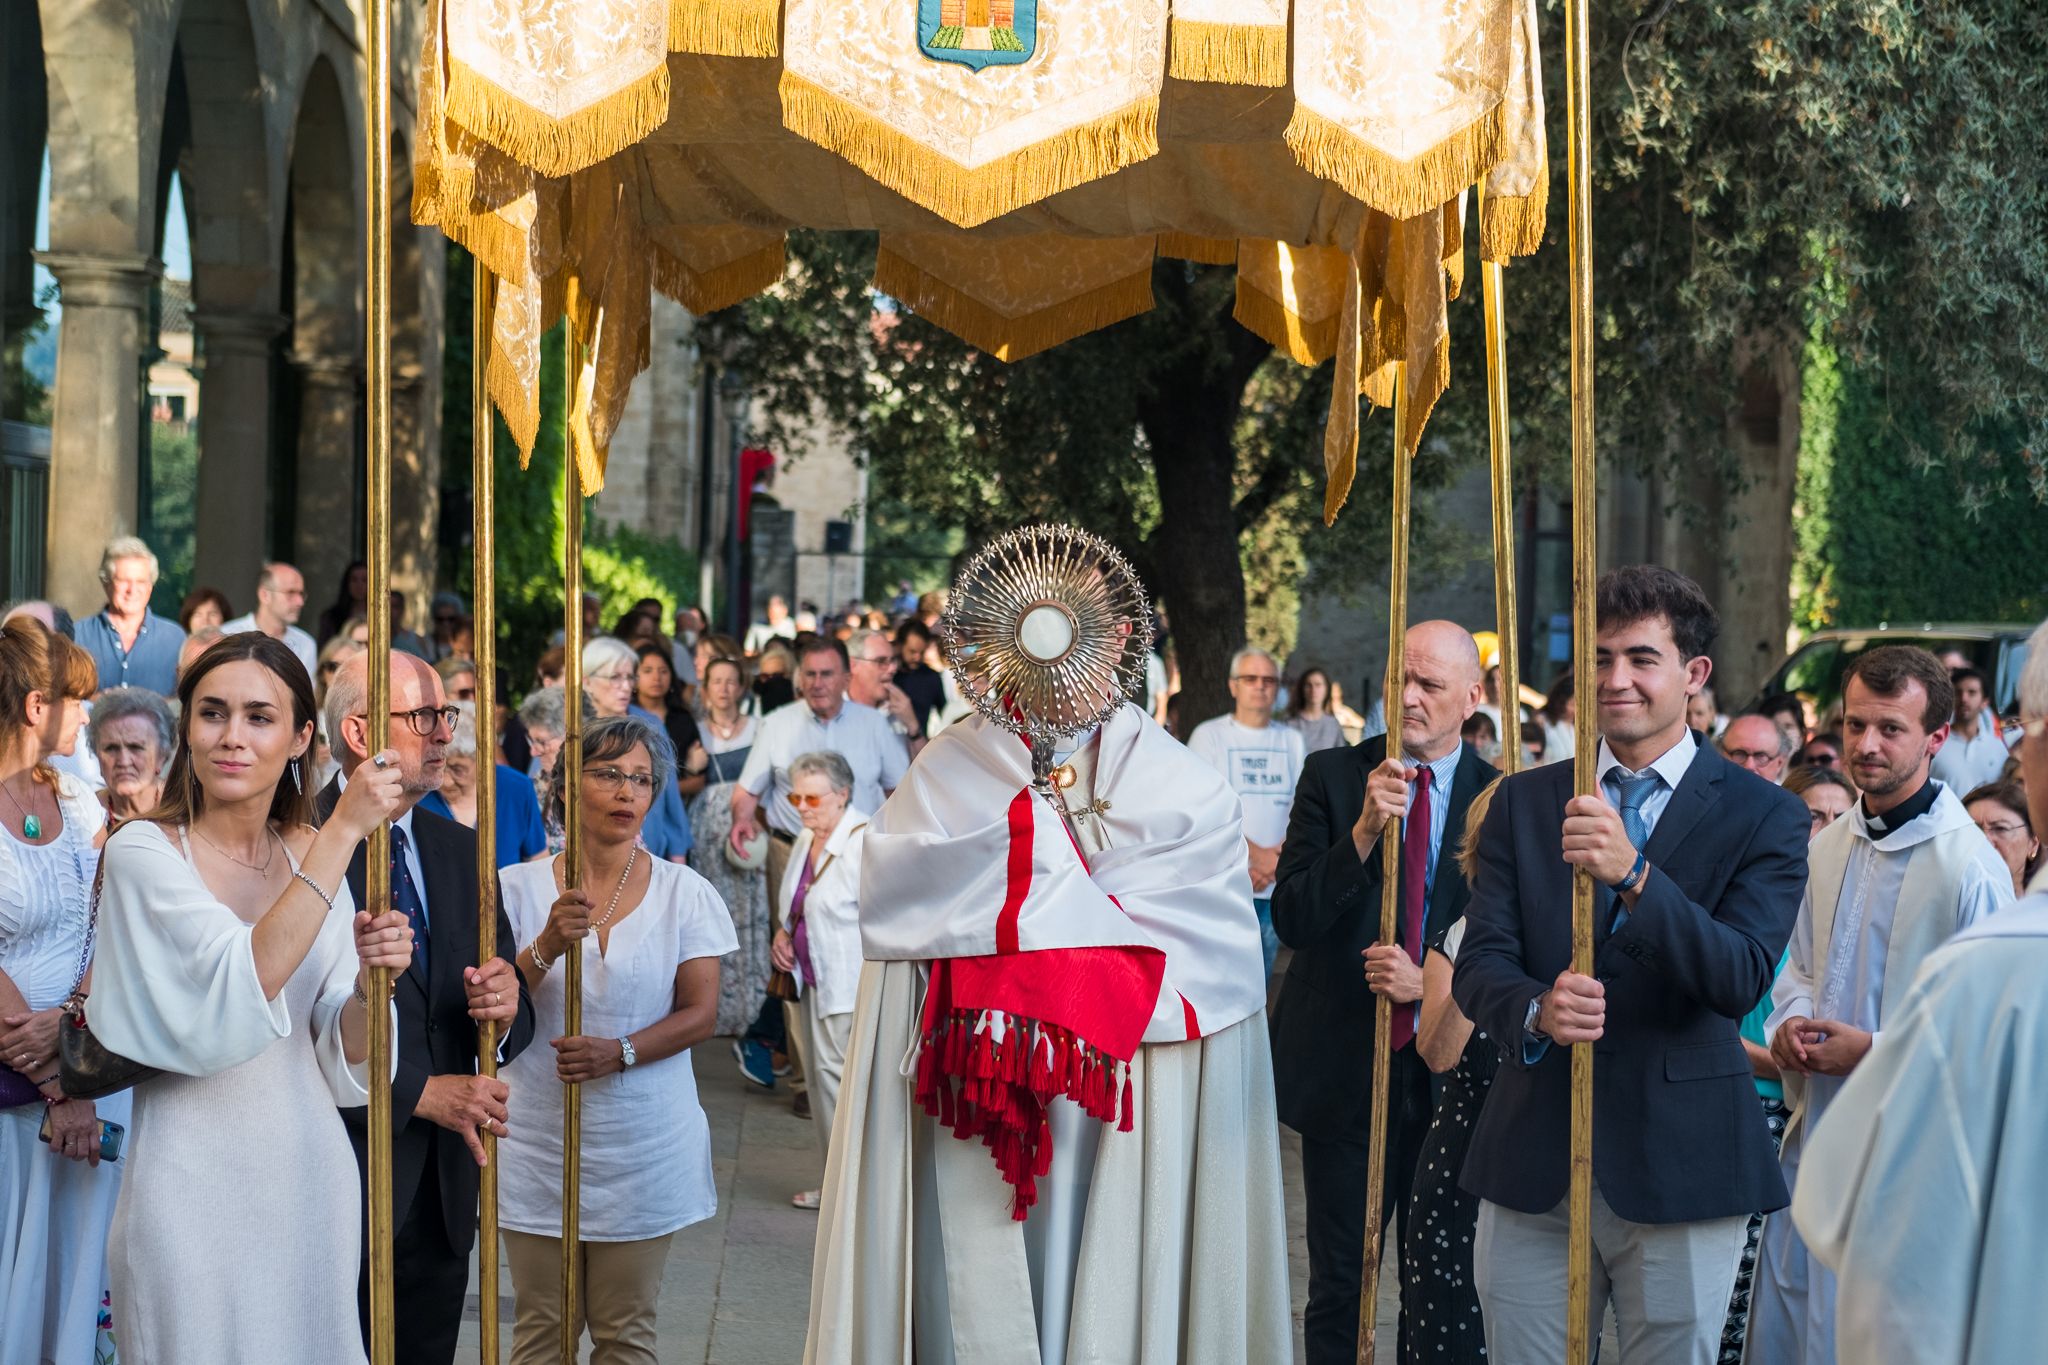 Els santcugatencs s'han reunit als voltants del Monestir per celebrar el Corpus Christi. FOTO: Ale Gómez